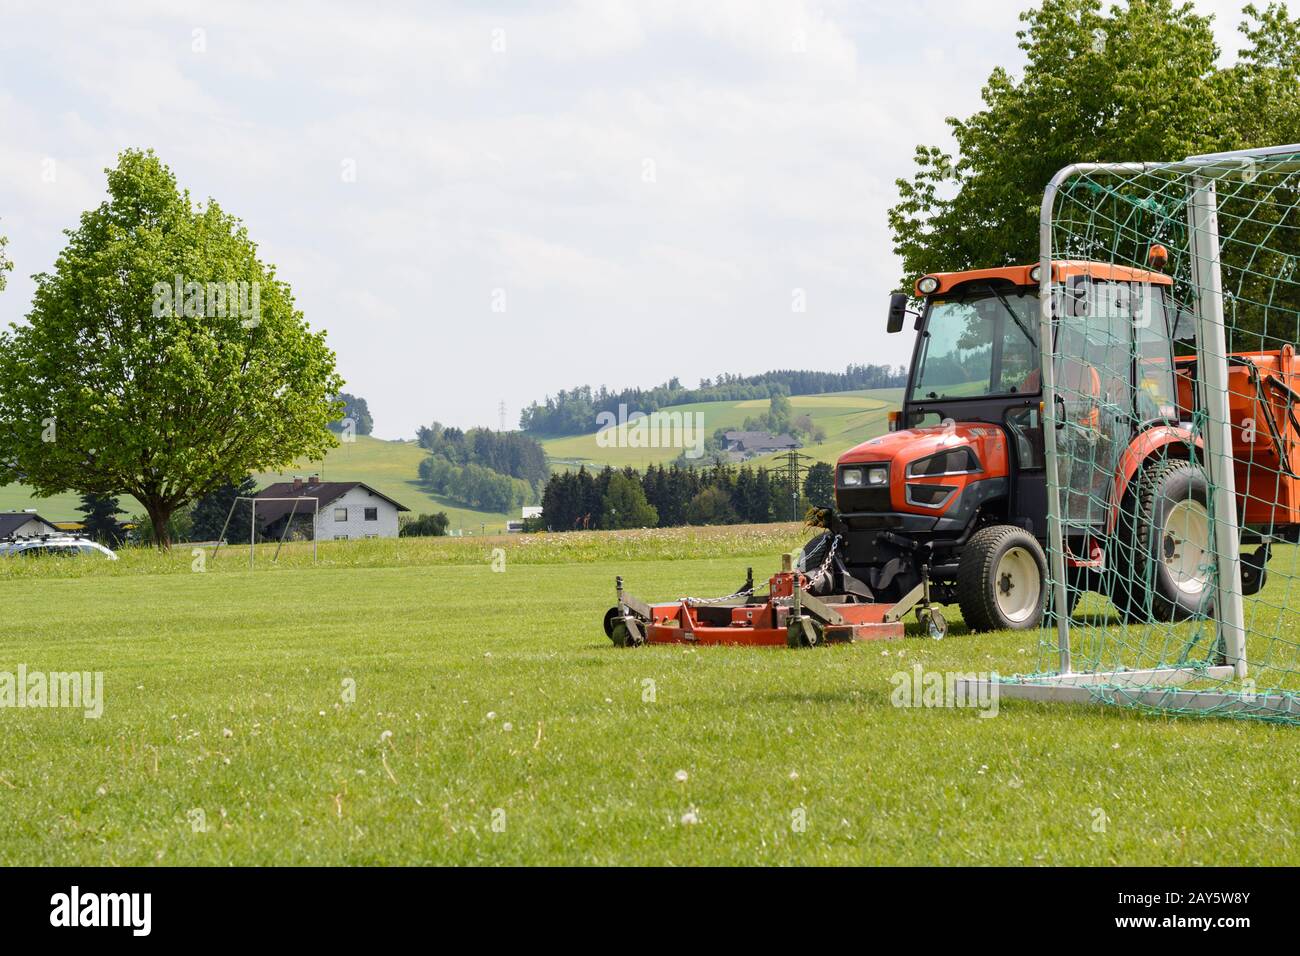 l'herbe réelle sur les terrains de sport est fauchée avec un tracteur à gazon Banque D'Images